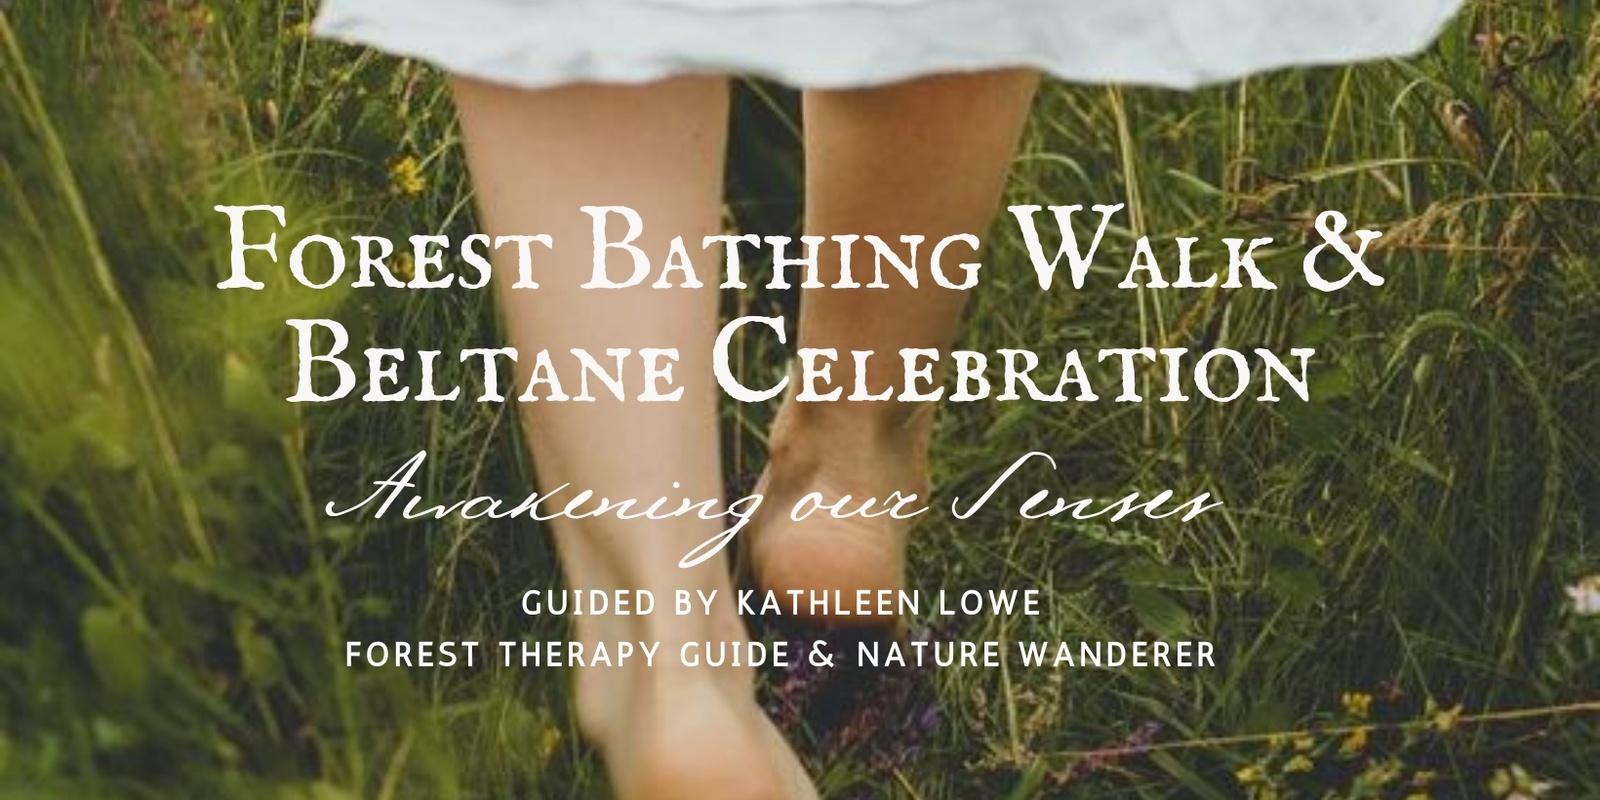 Banner image for Forest Bathing Walk & Celebration of Beltane